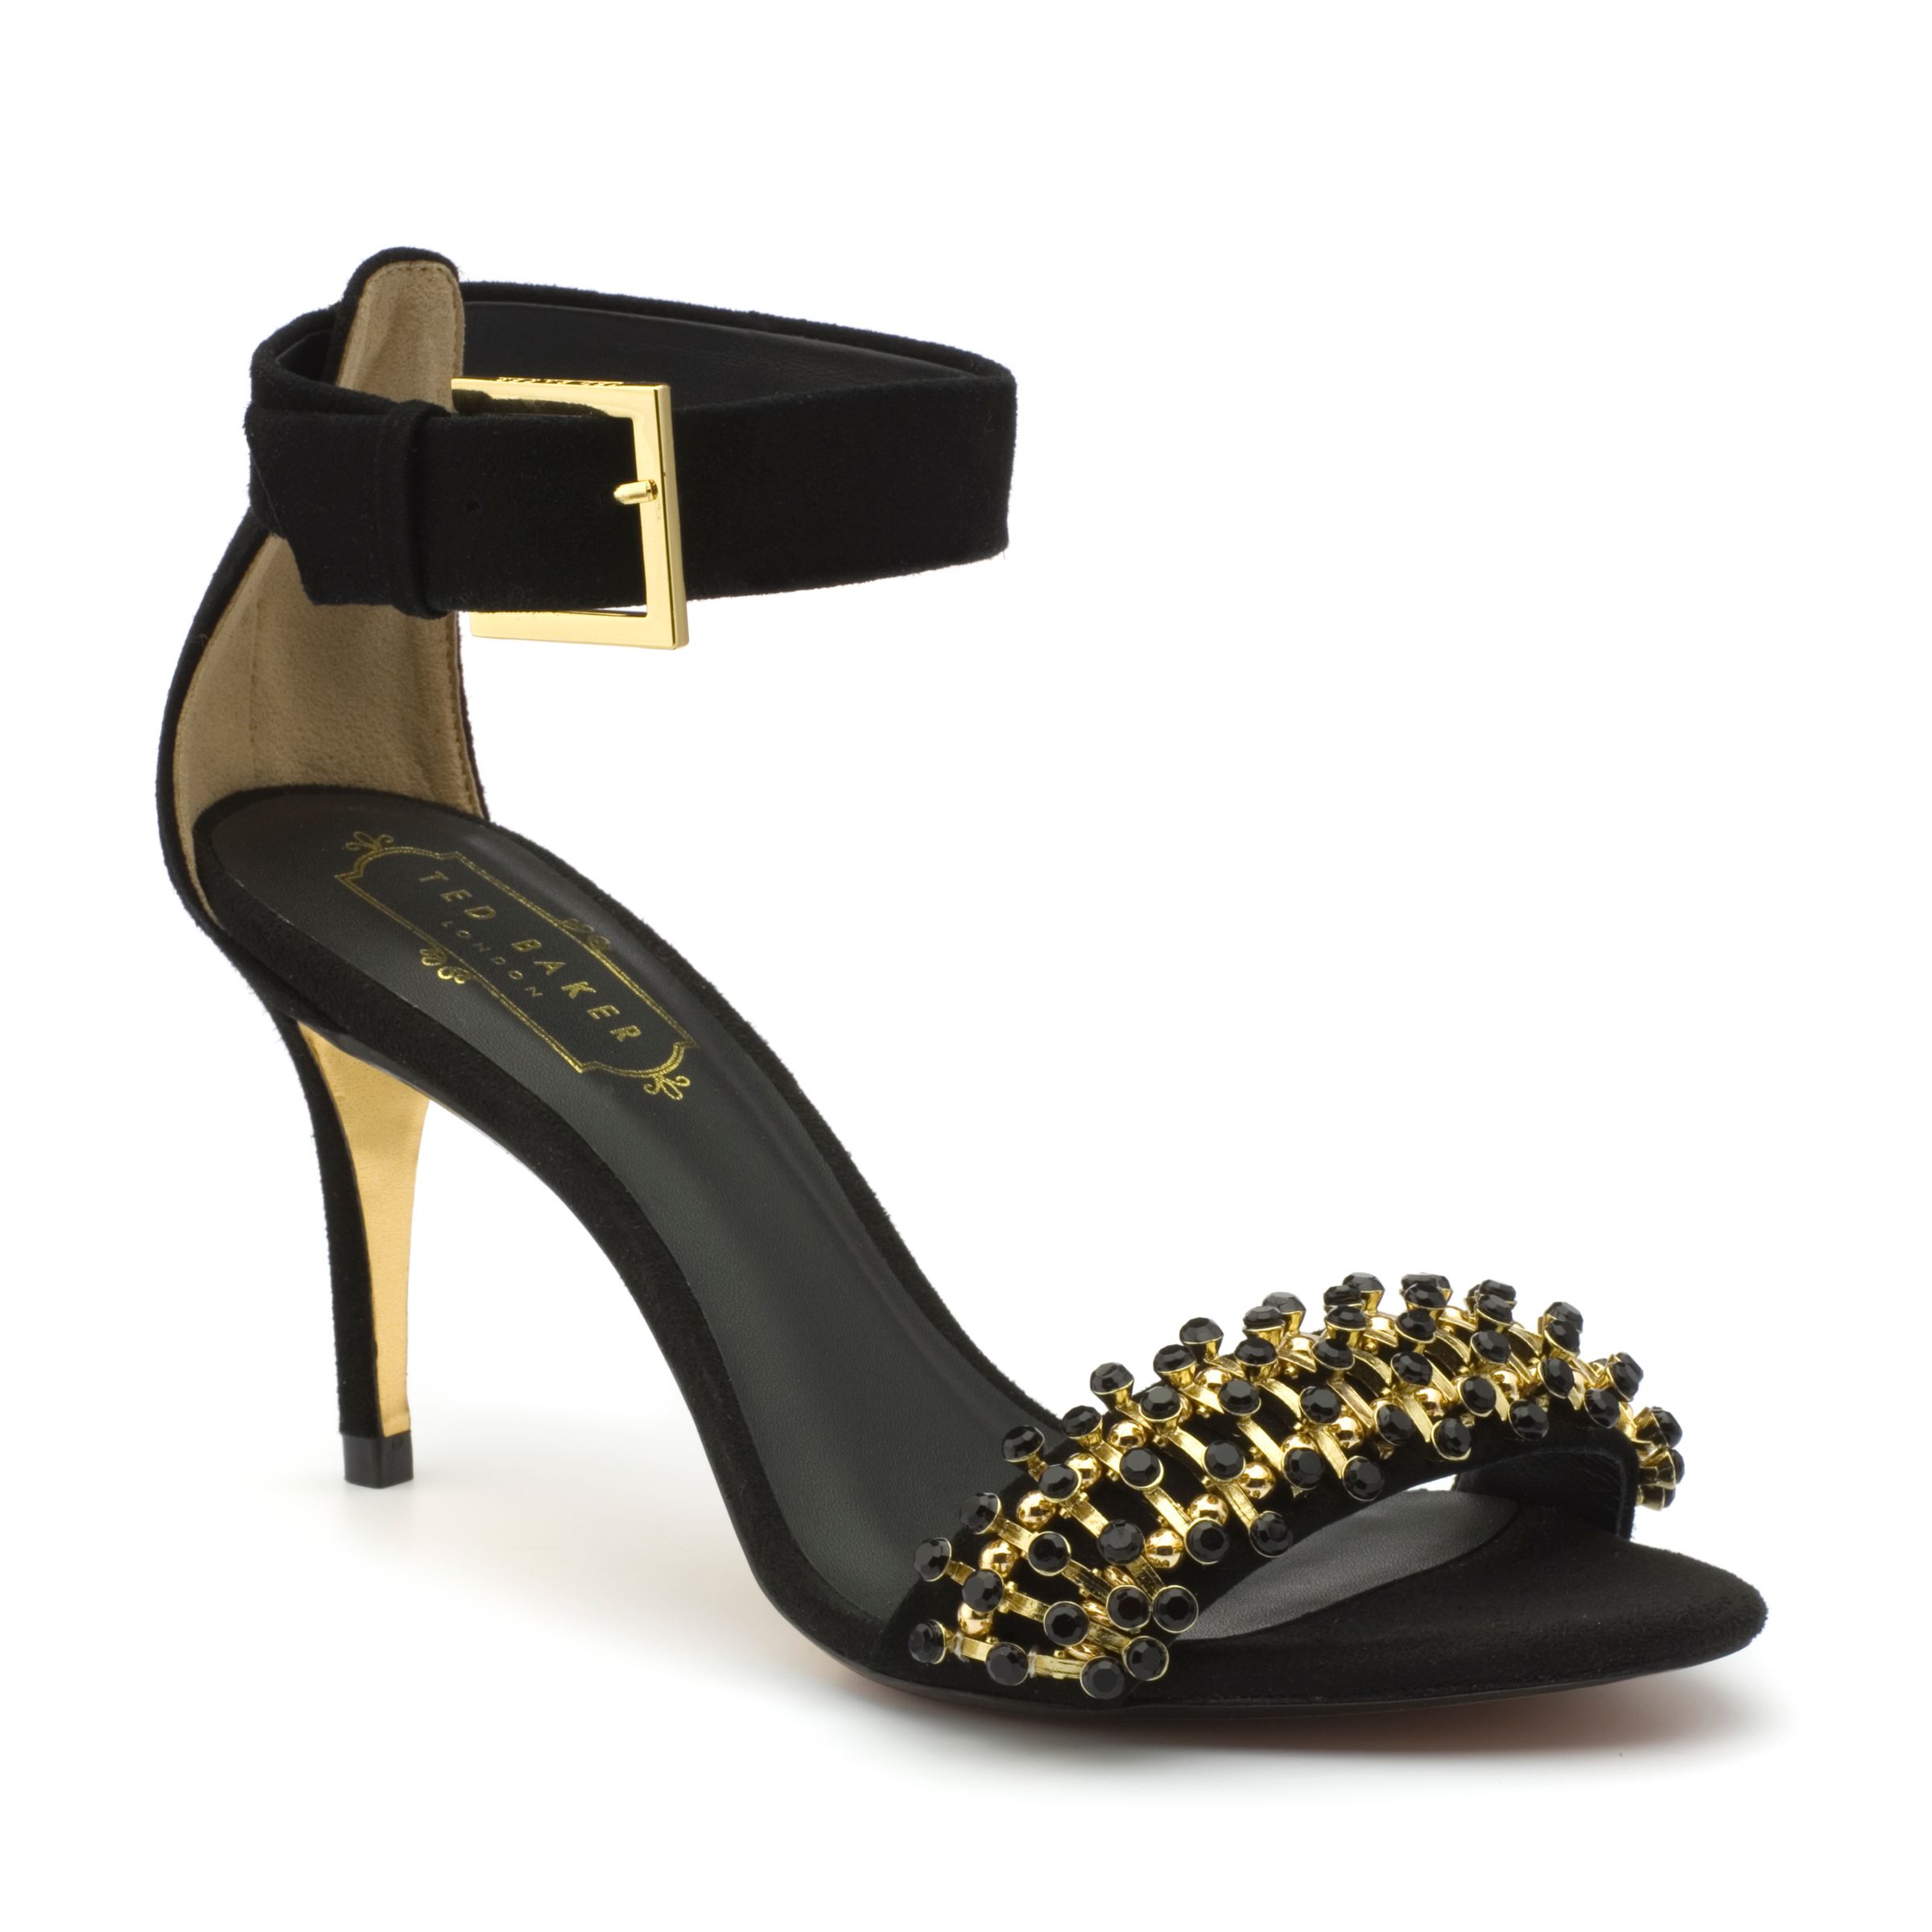 Ted Baker Nishik Jewel Embellished Court Shoe Sandals, Black Suede